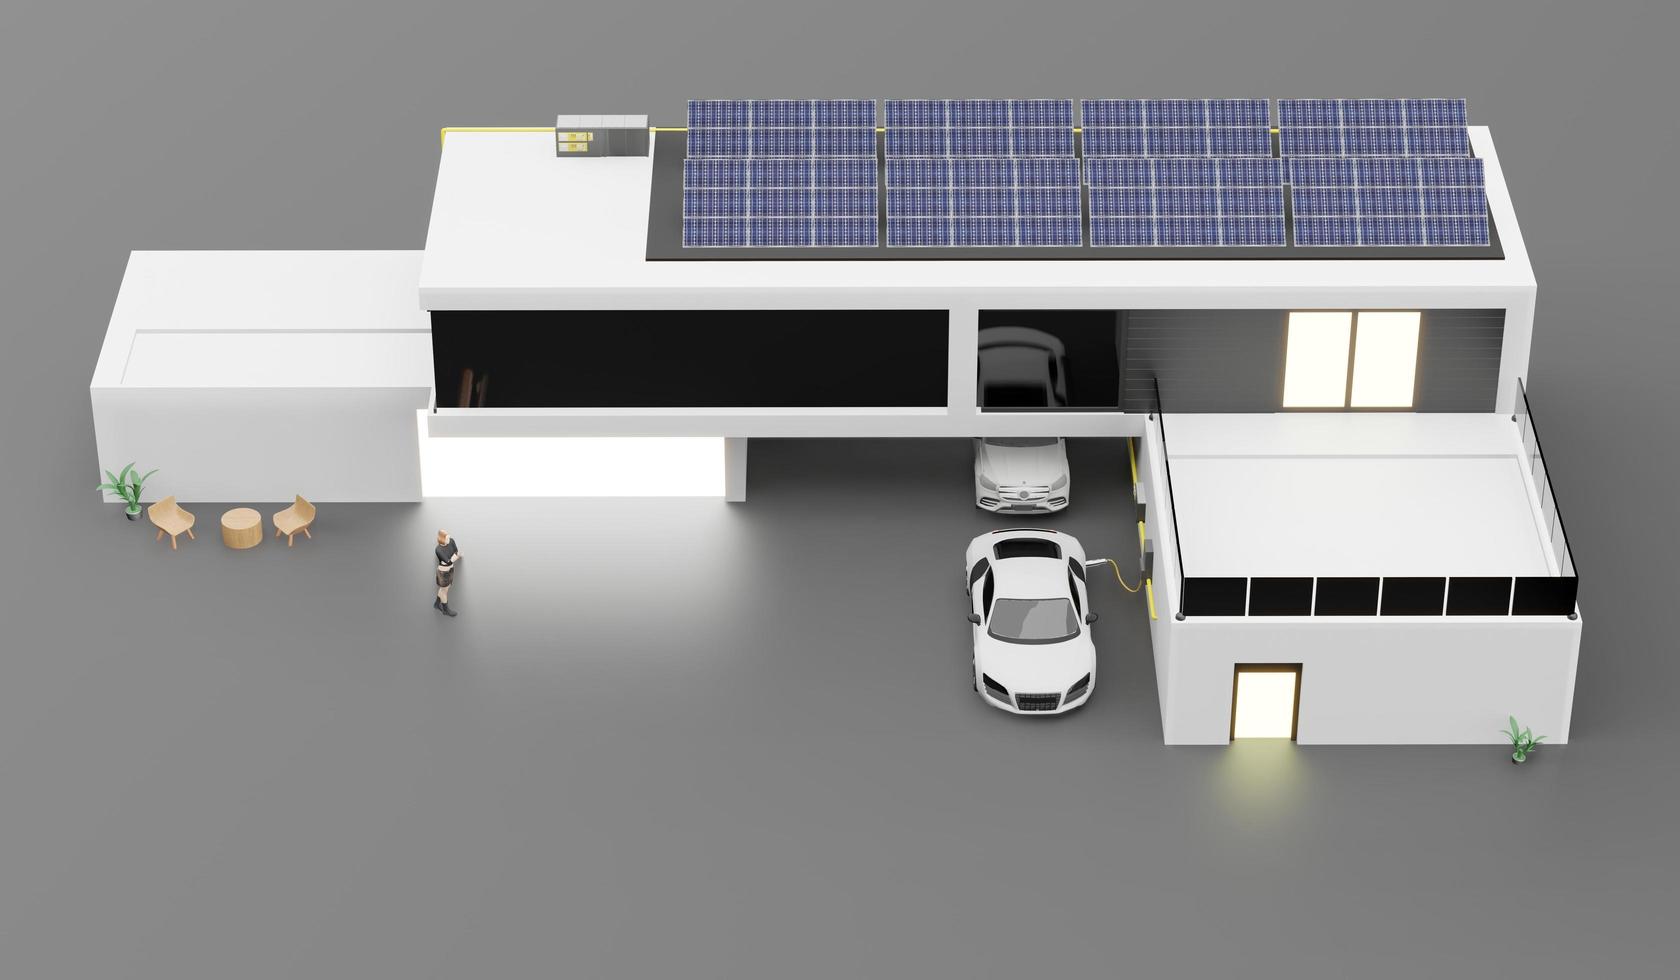 caricabatterie elettrico carin il edificio Casa tetto e solare pannelli inteligente casa solare fotovoltaico 3d illustrazione foto